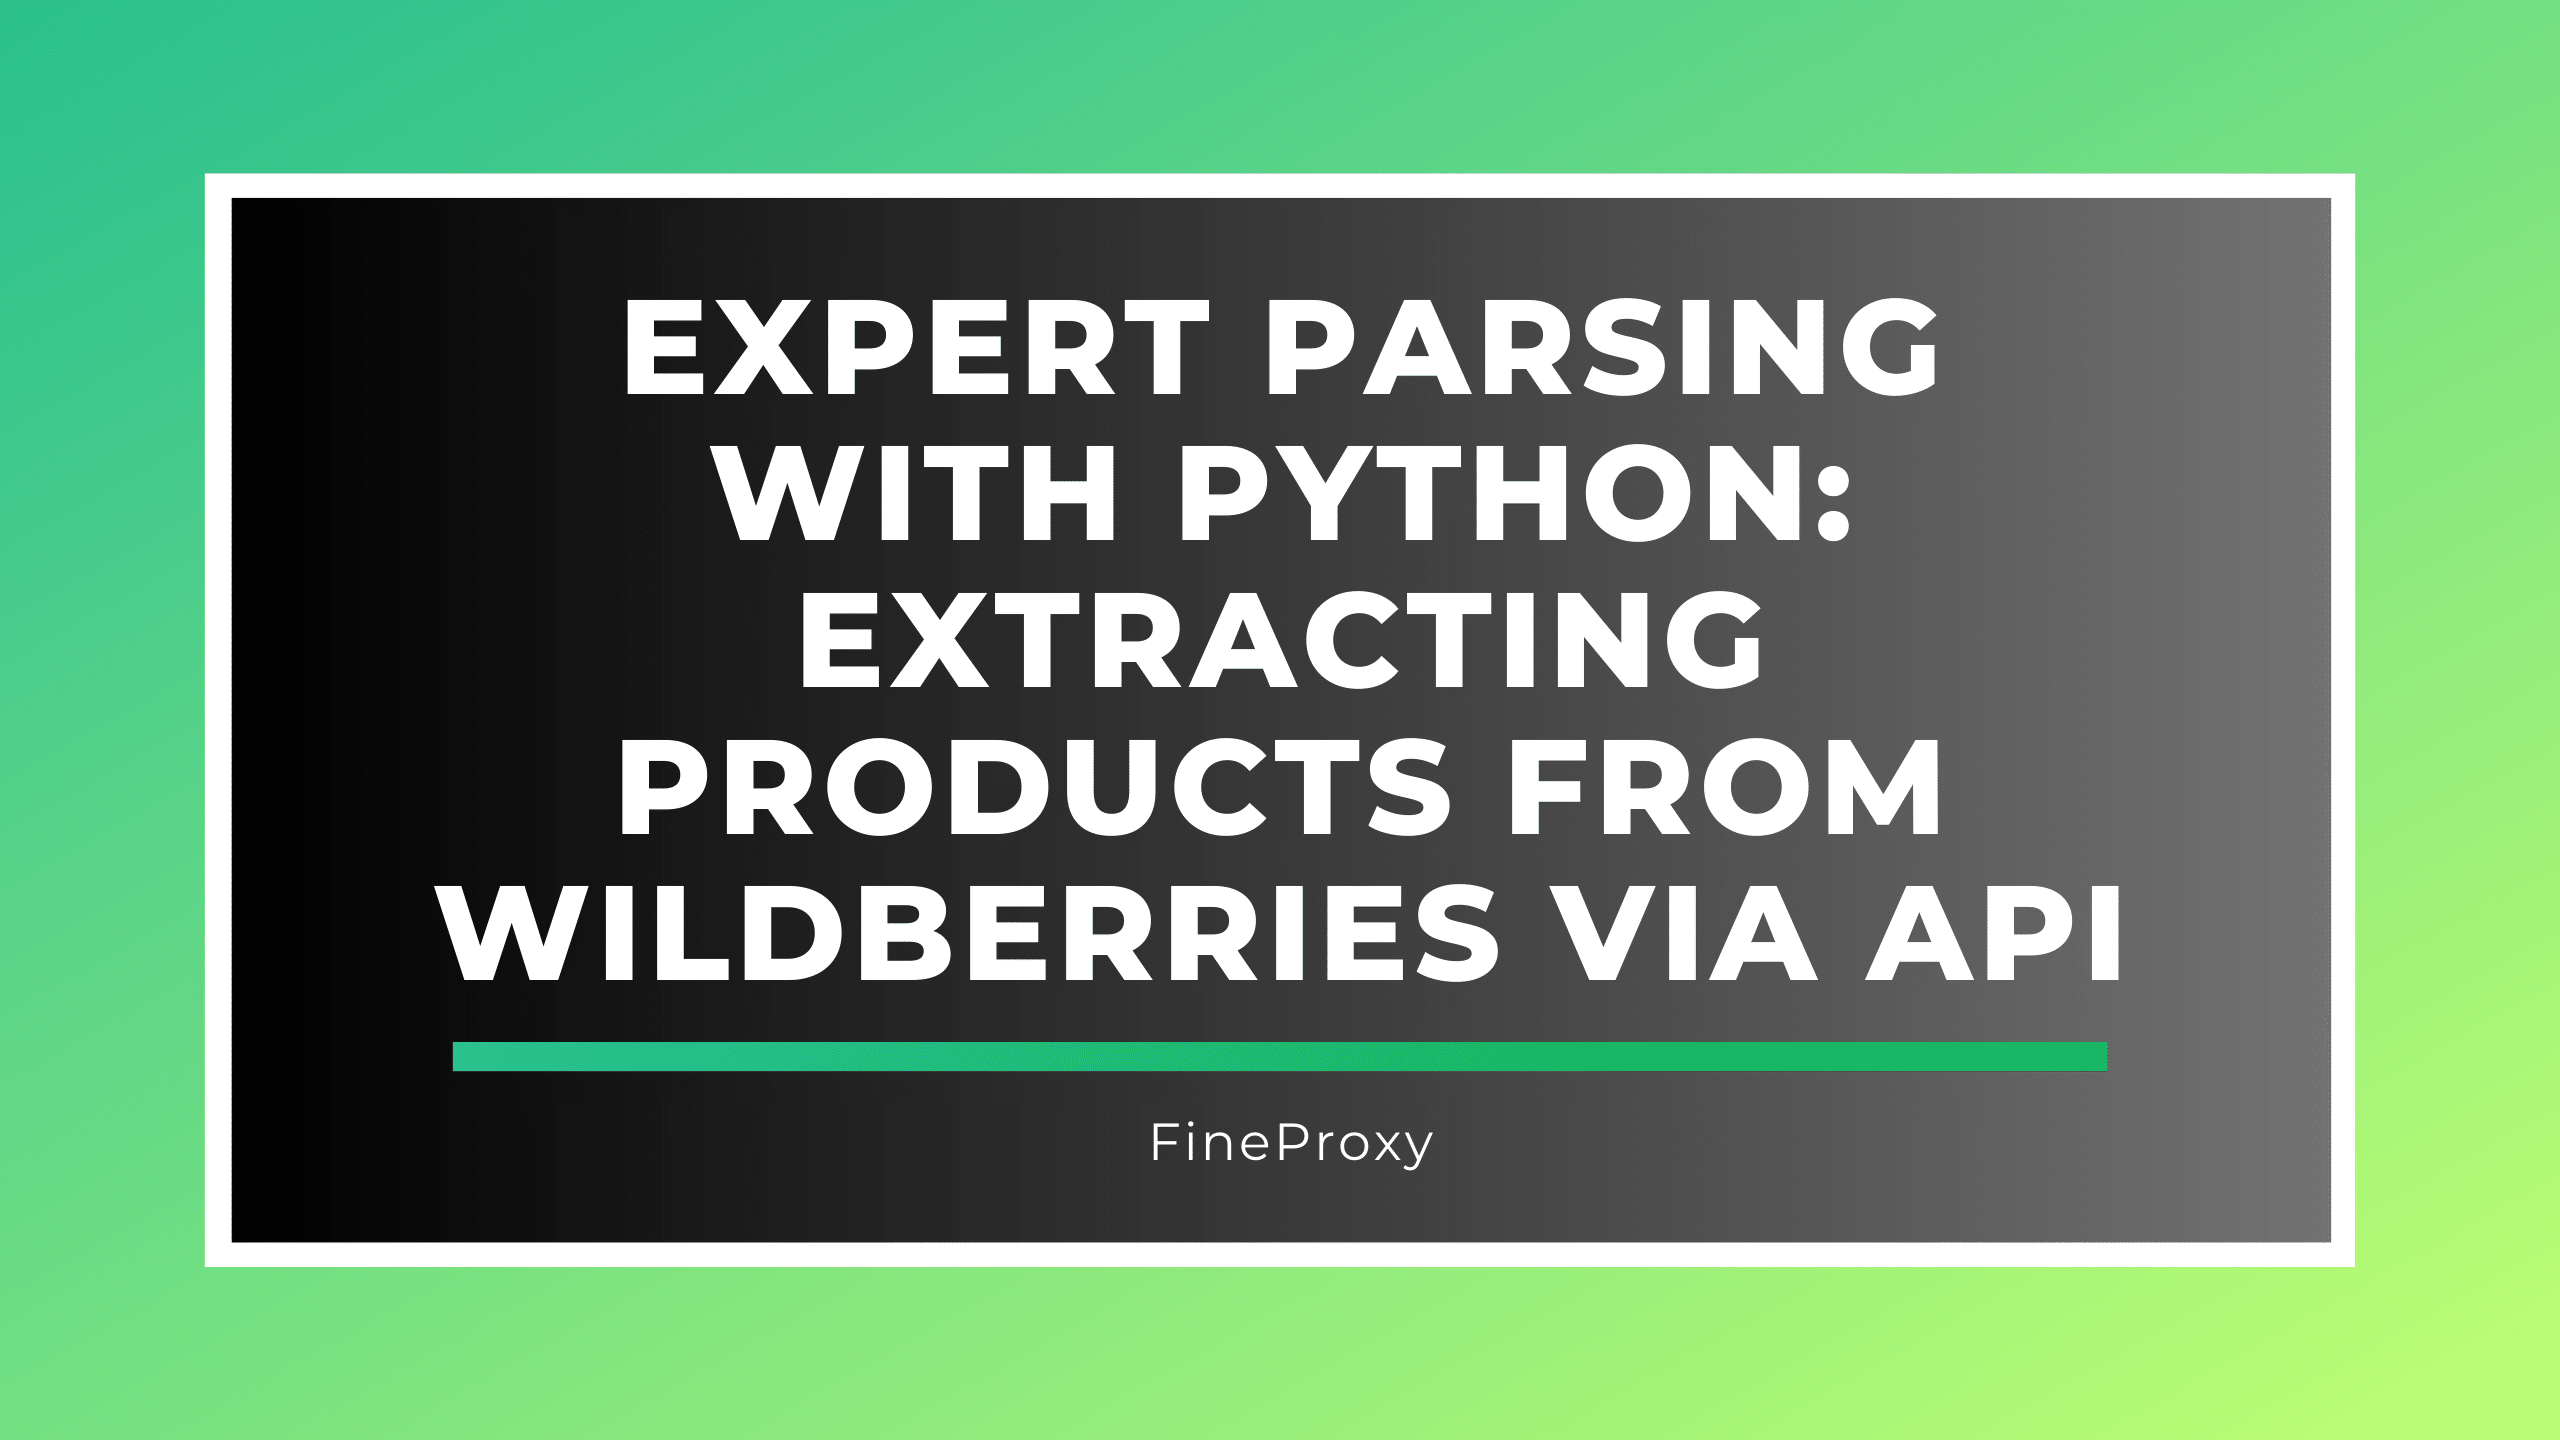 Eksperckie parsowanie w Pythonie: wyodrębnianie produktów z Wildberries poprzez API